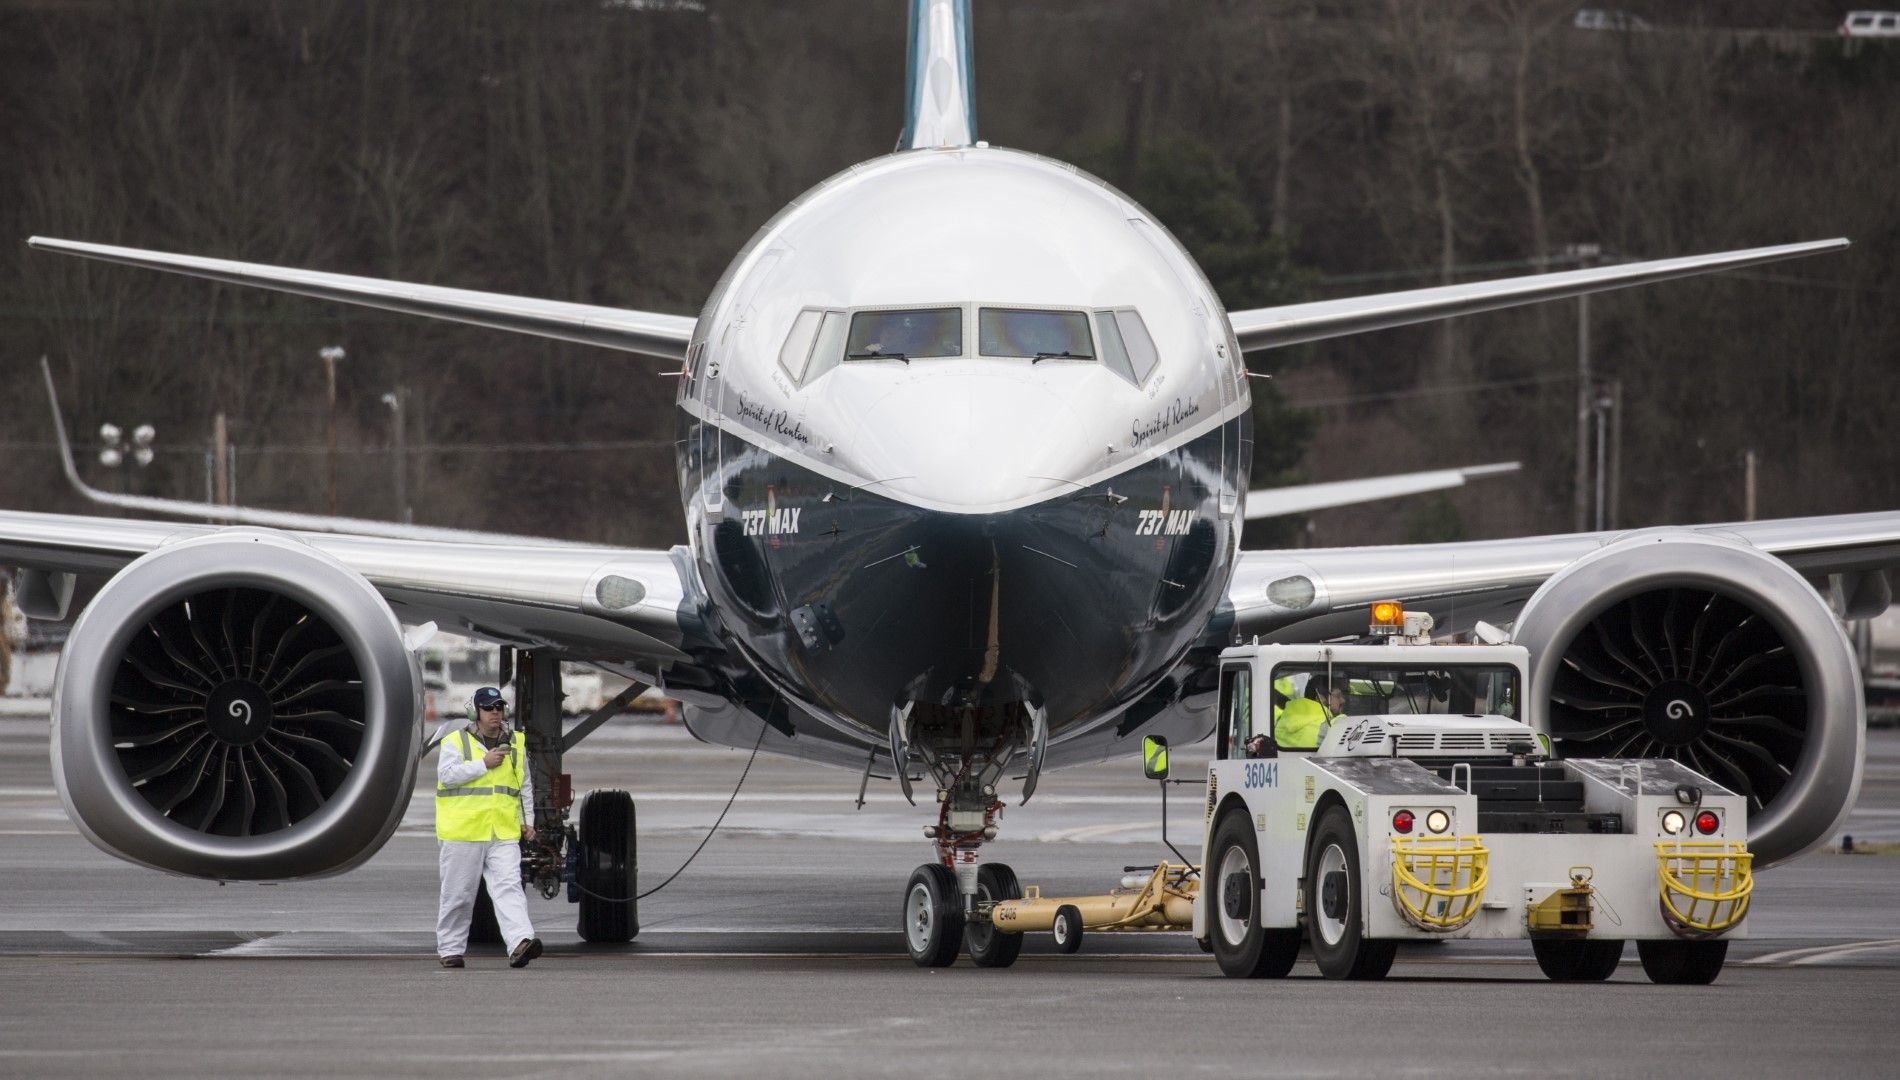 ФАА на САЩ поема пълен контрол върху сертифицирането на новите самолети 737 Max на "Боинг" 